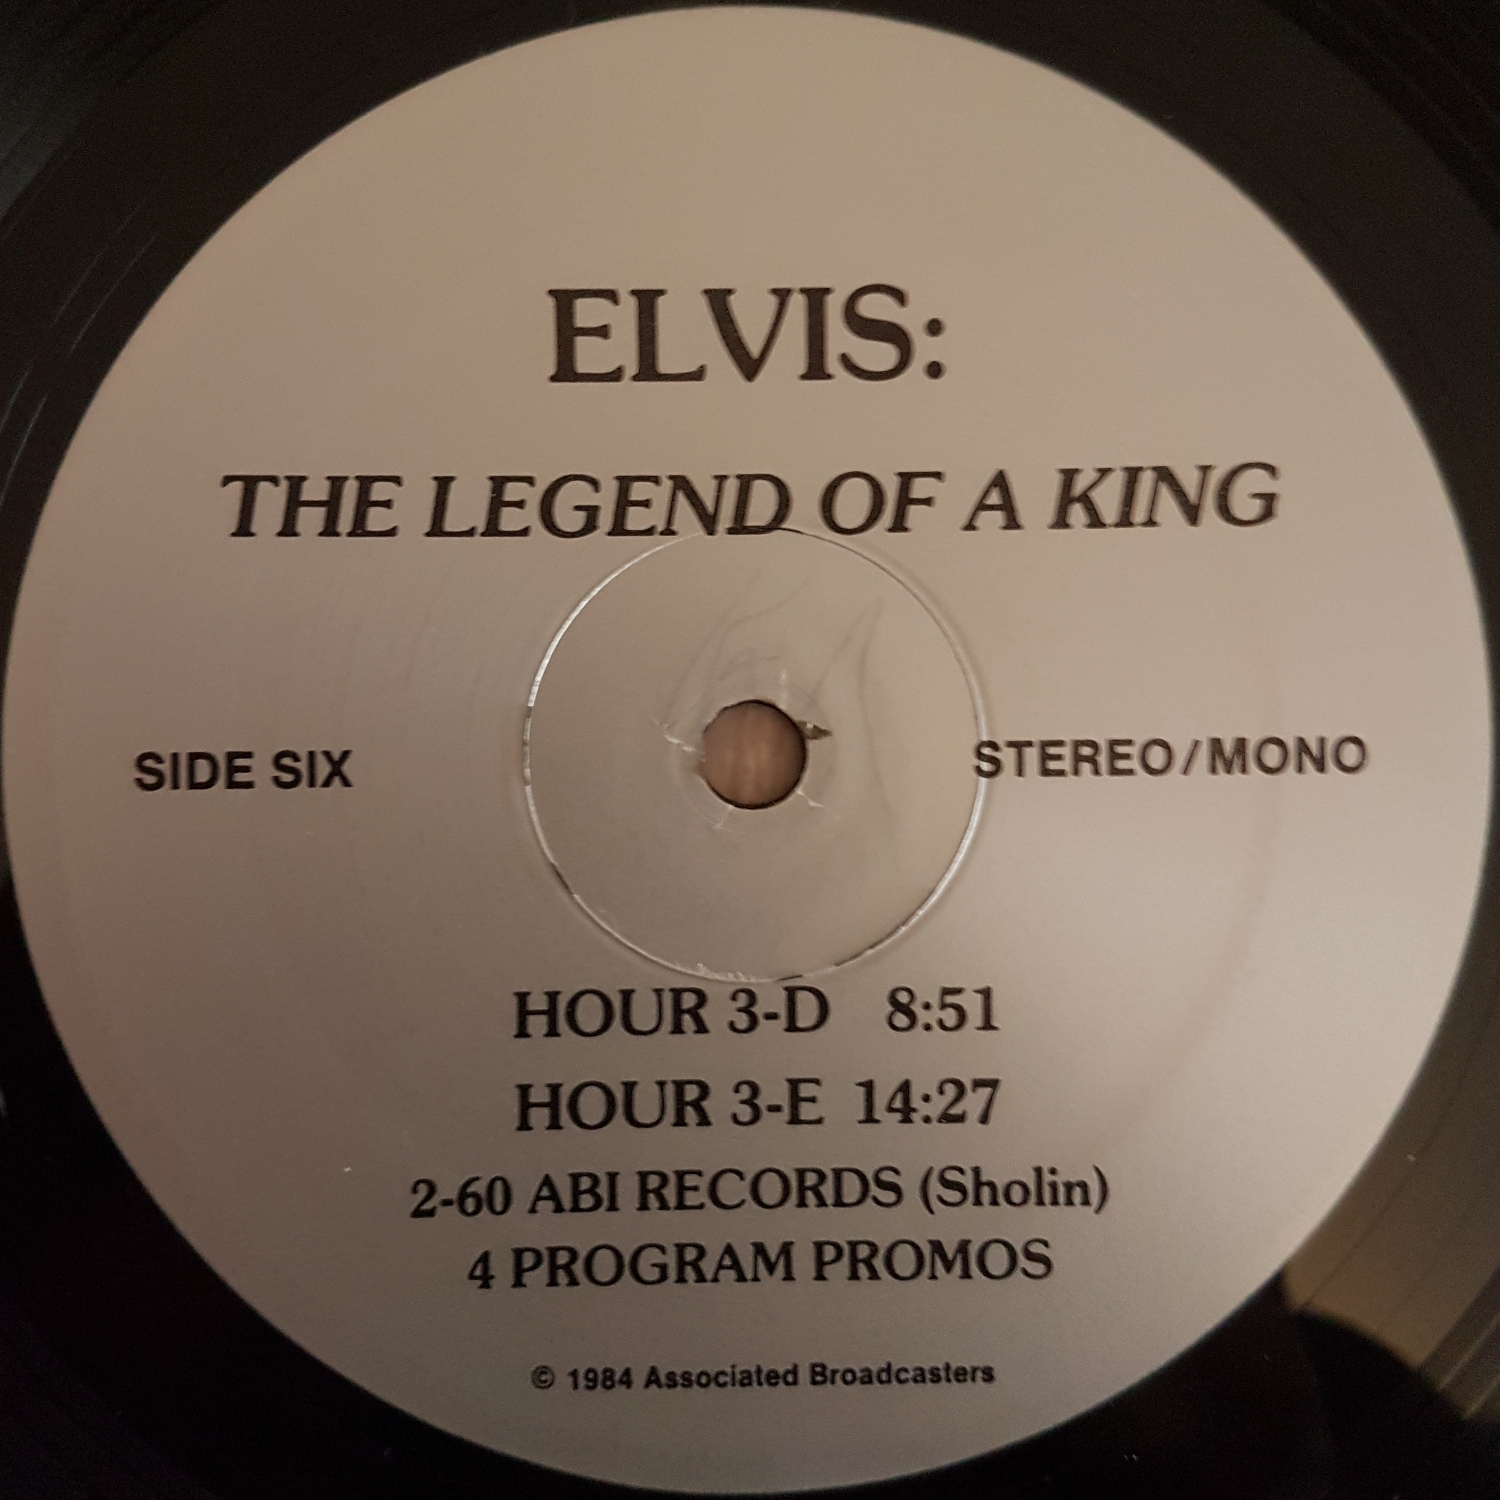 JOHN LEADER - ELVIS THE LEGEND OF A KING (3 Hour Broadcast) Legendofakingrb101bj0o